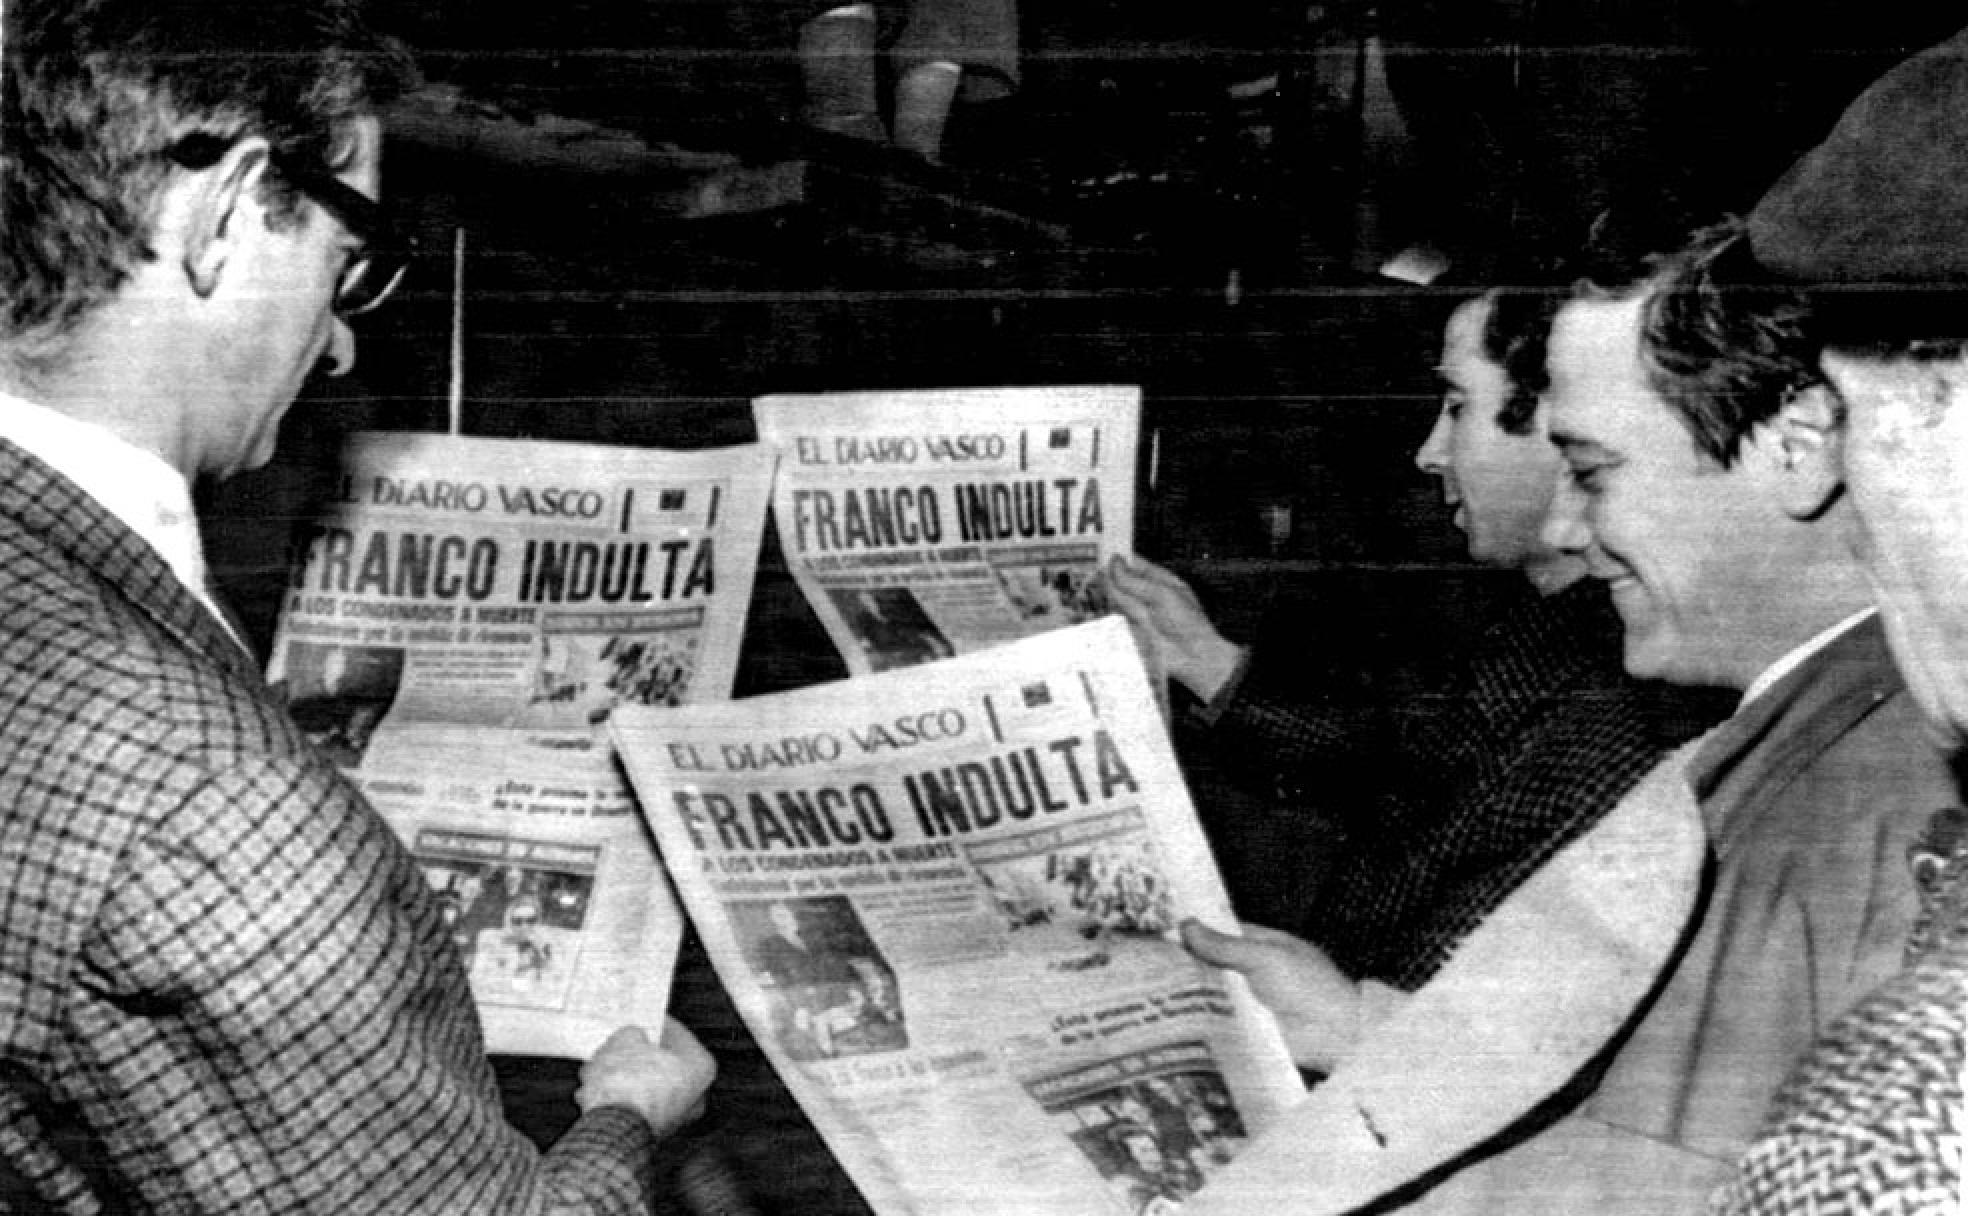 Varios trabajadores del «Diario Vasco» leen los titulares de su periódico que hablan de la decisión de Franco de indultar a los seis miembros de ETA procesados en el juicio de Burgos.